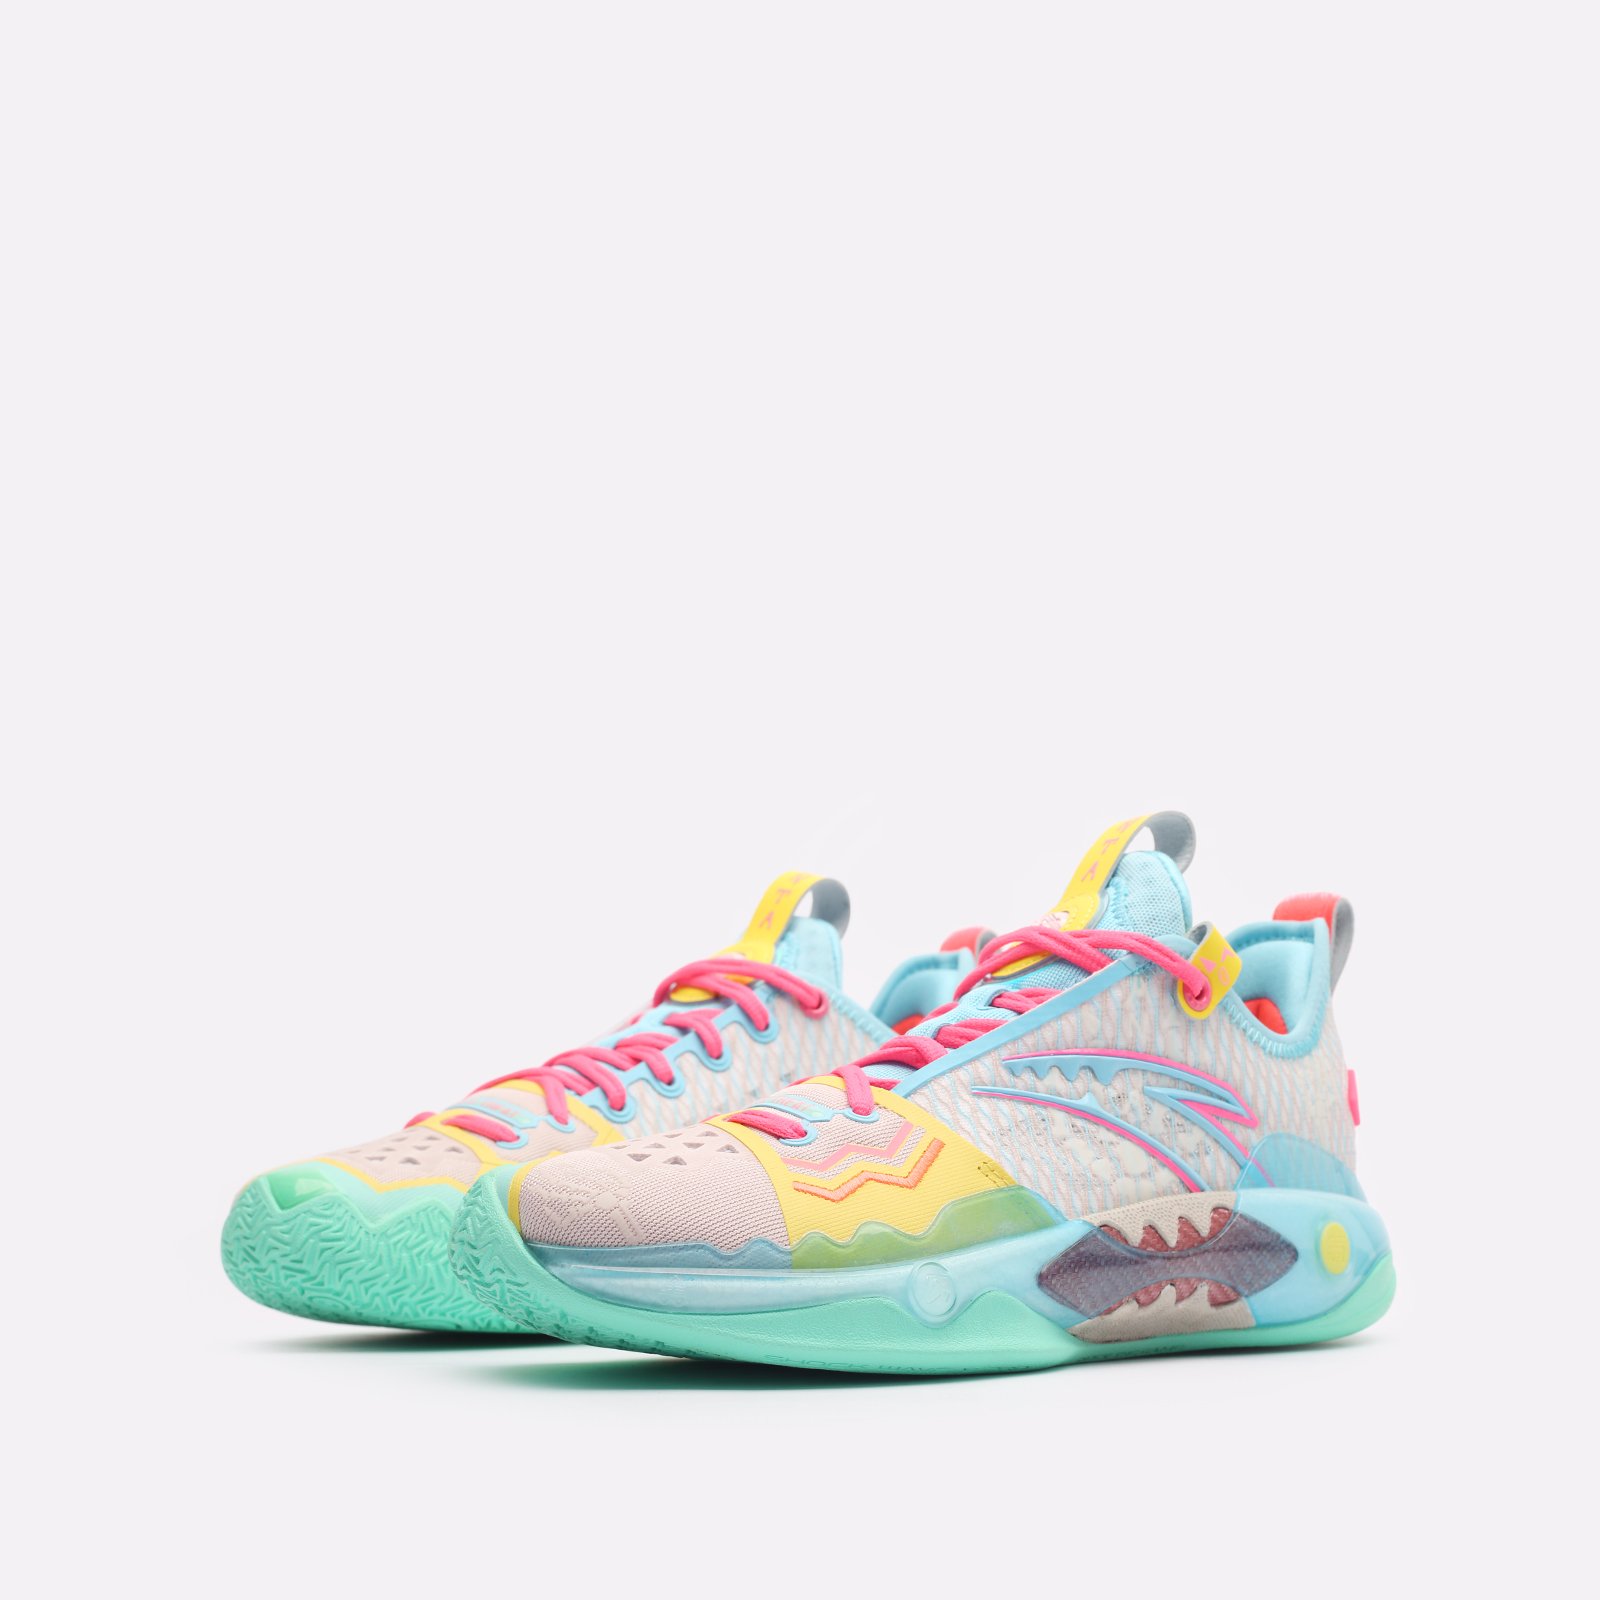 мужские разноцветные баскетбольные кроссовки ANTA Shock Wave 5.0 Pro 812341111-1 - цена, описание, фото 4